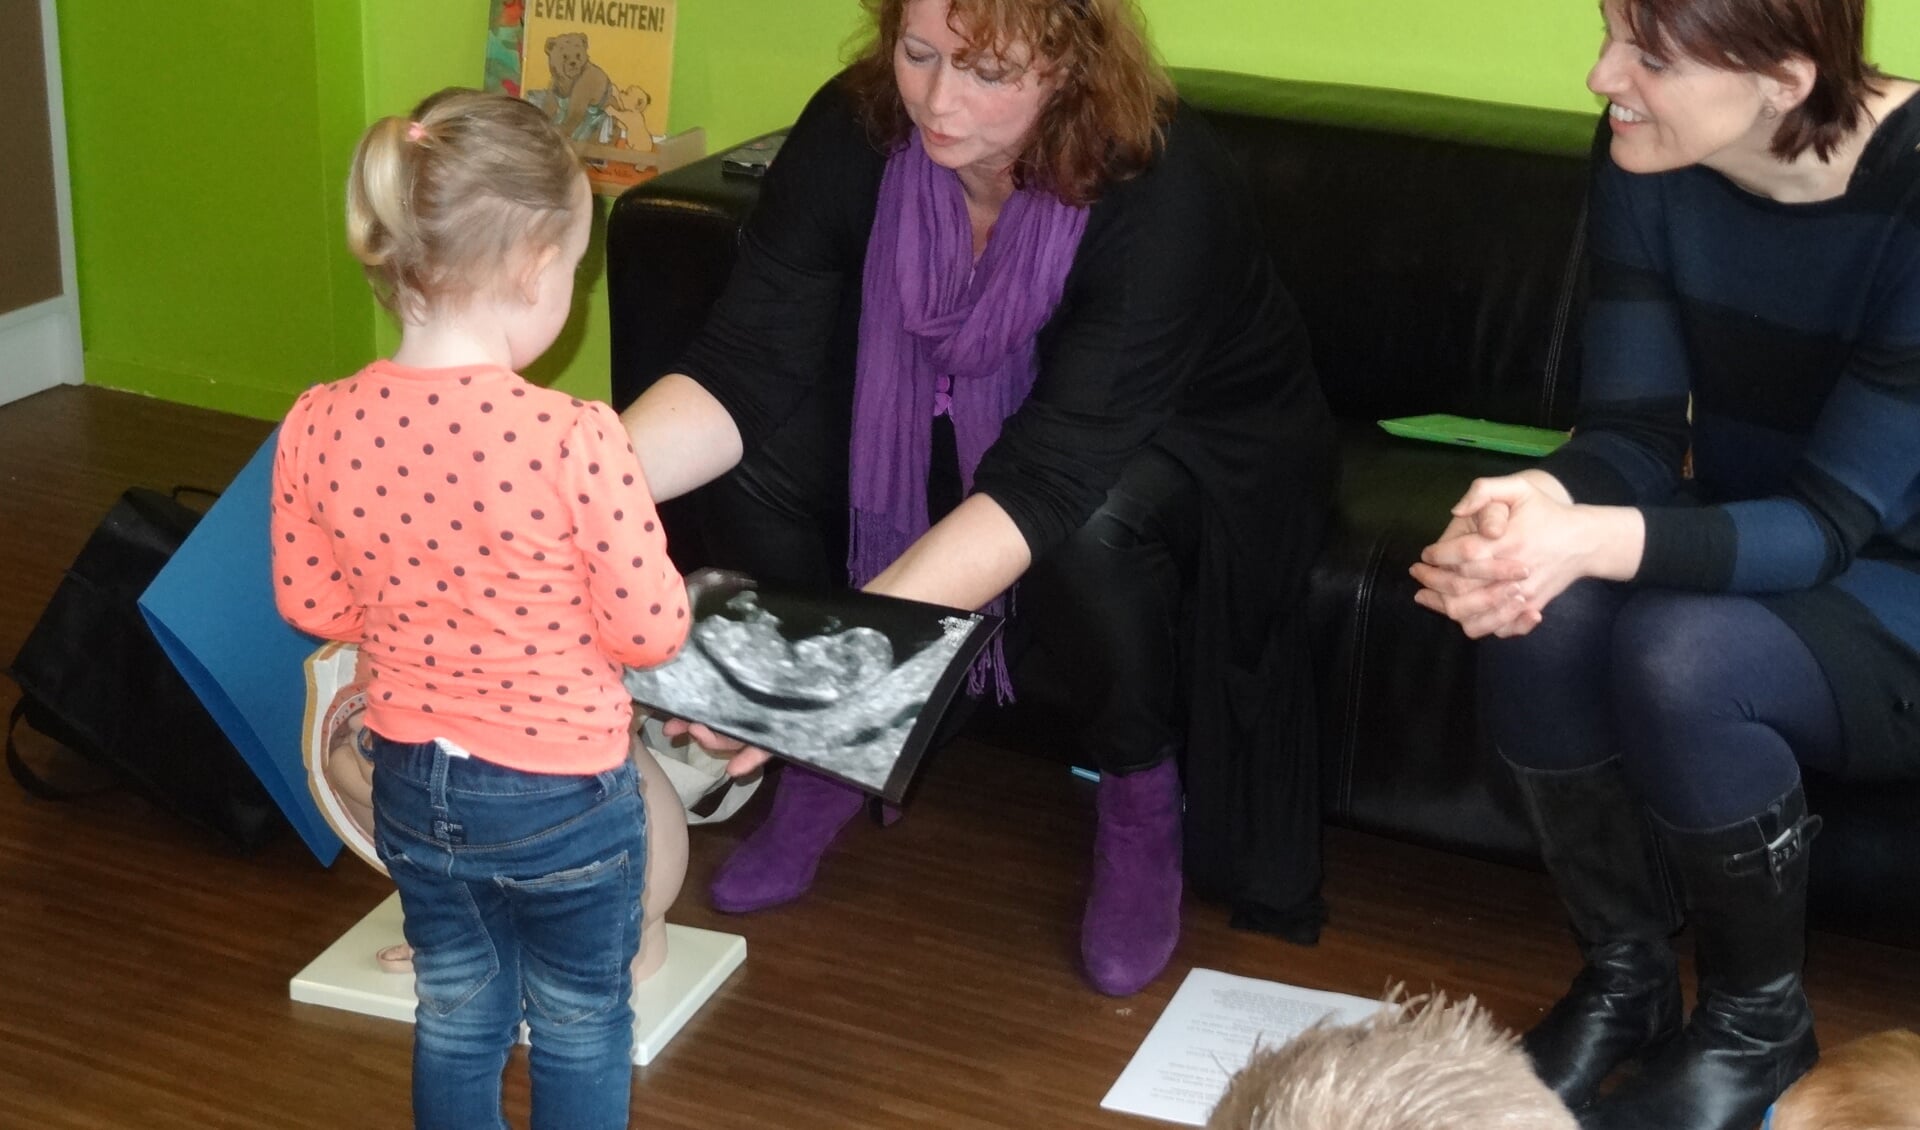 De kinderen van Skol weten nu heel veel over baby's, dankzij het bezoek van twee verloskundigen. | Foto: pr